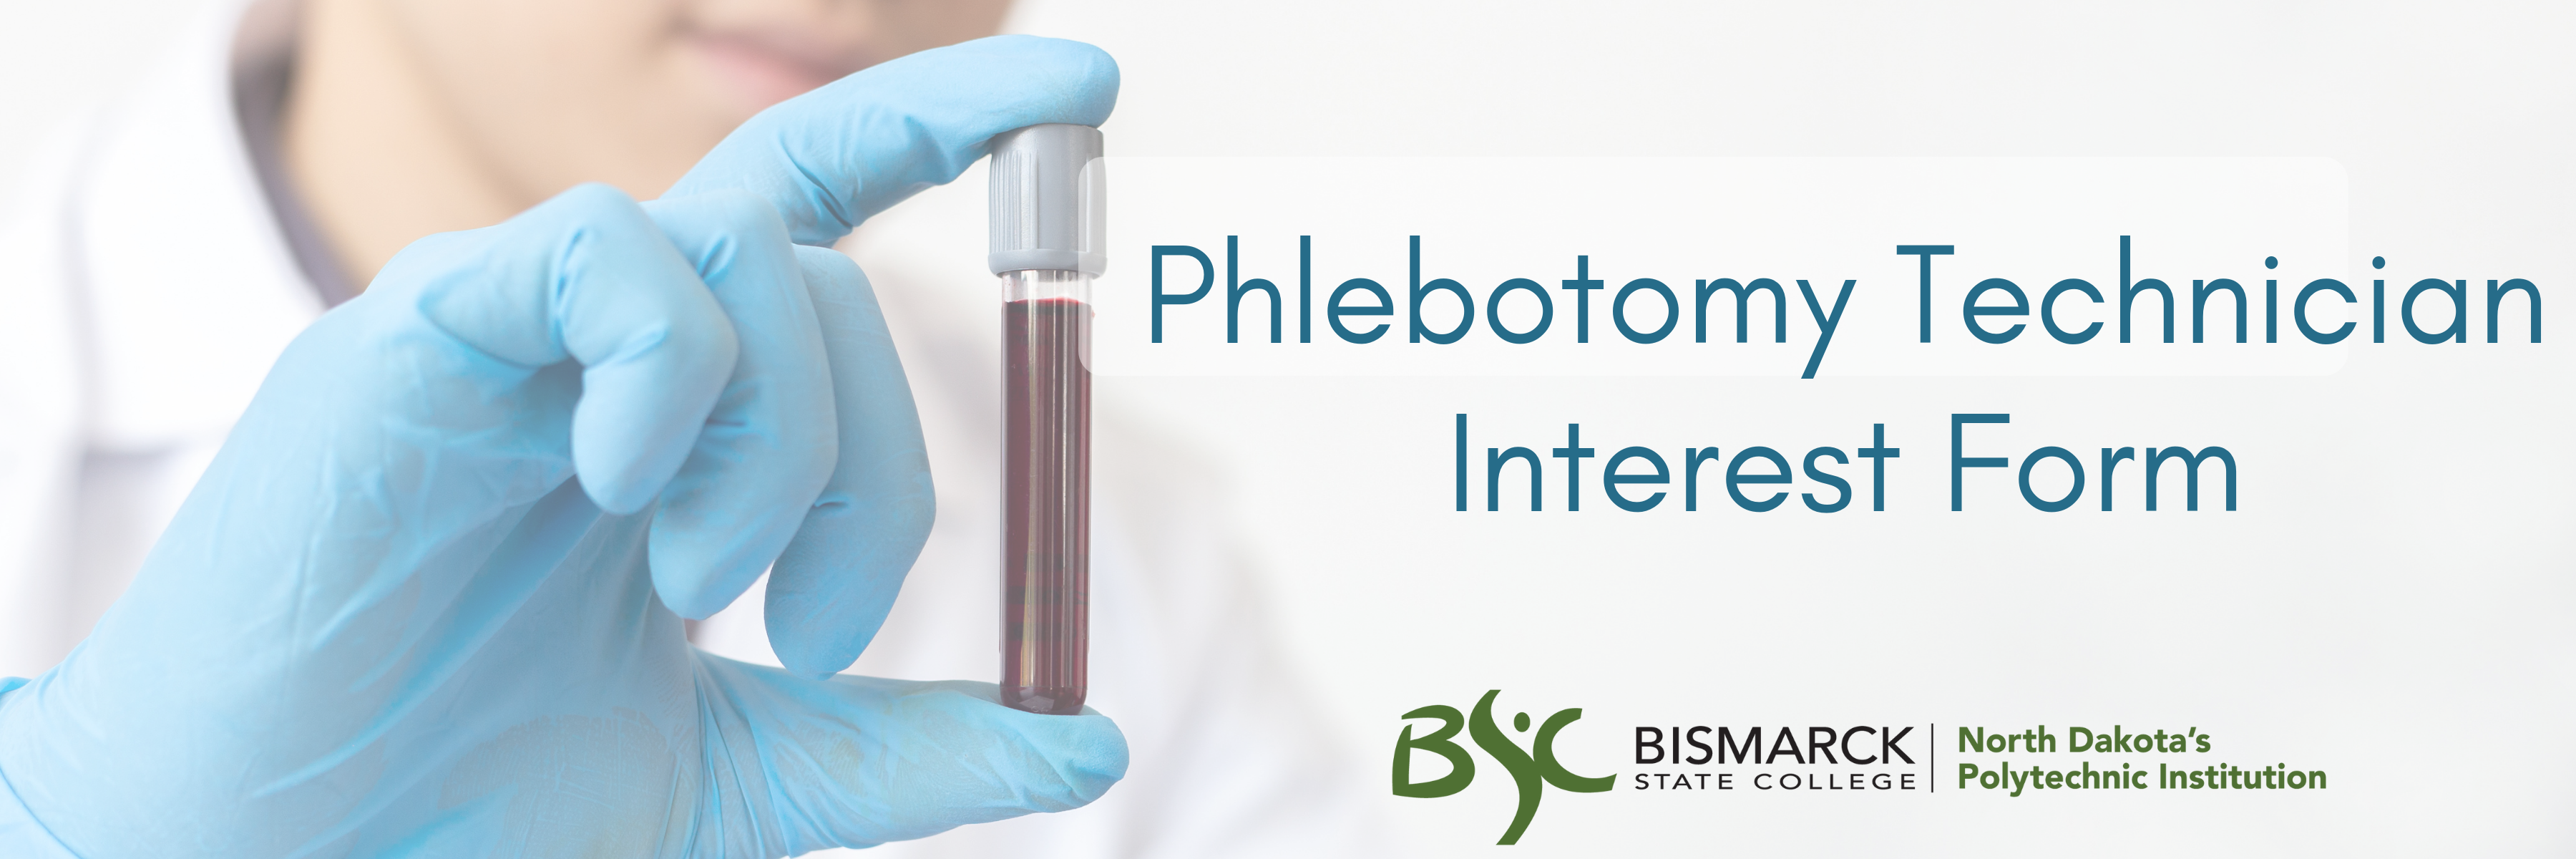 phlebotomy qp header